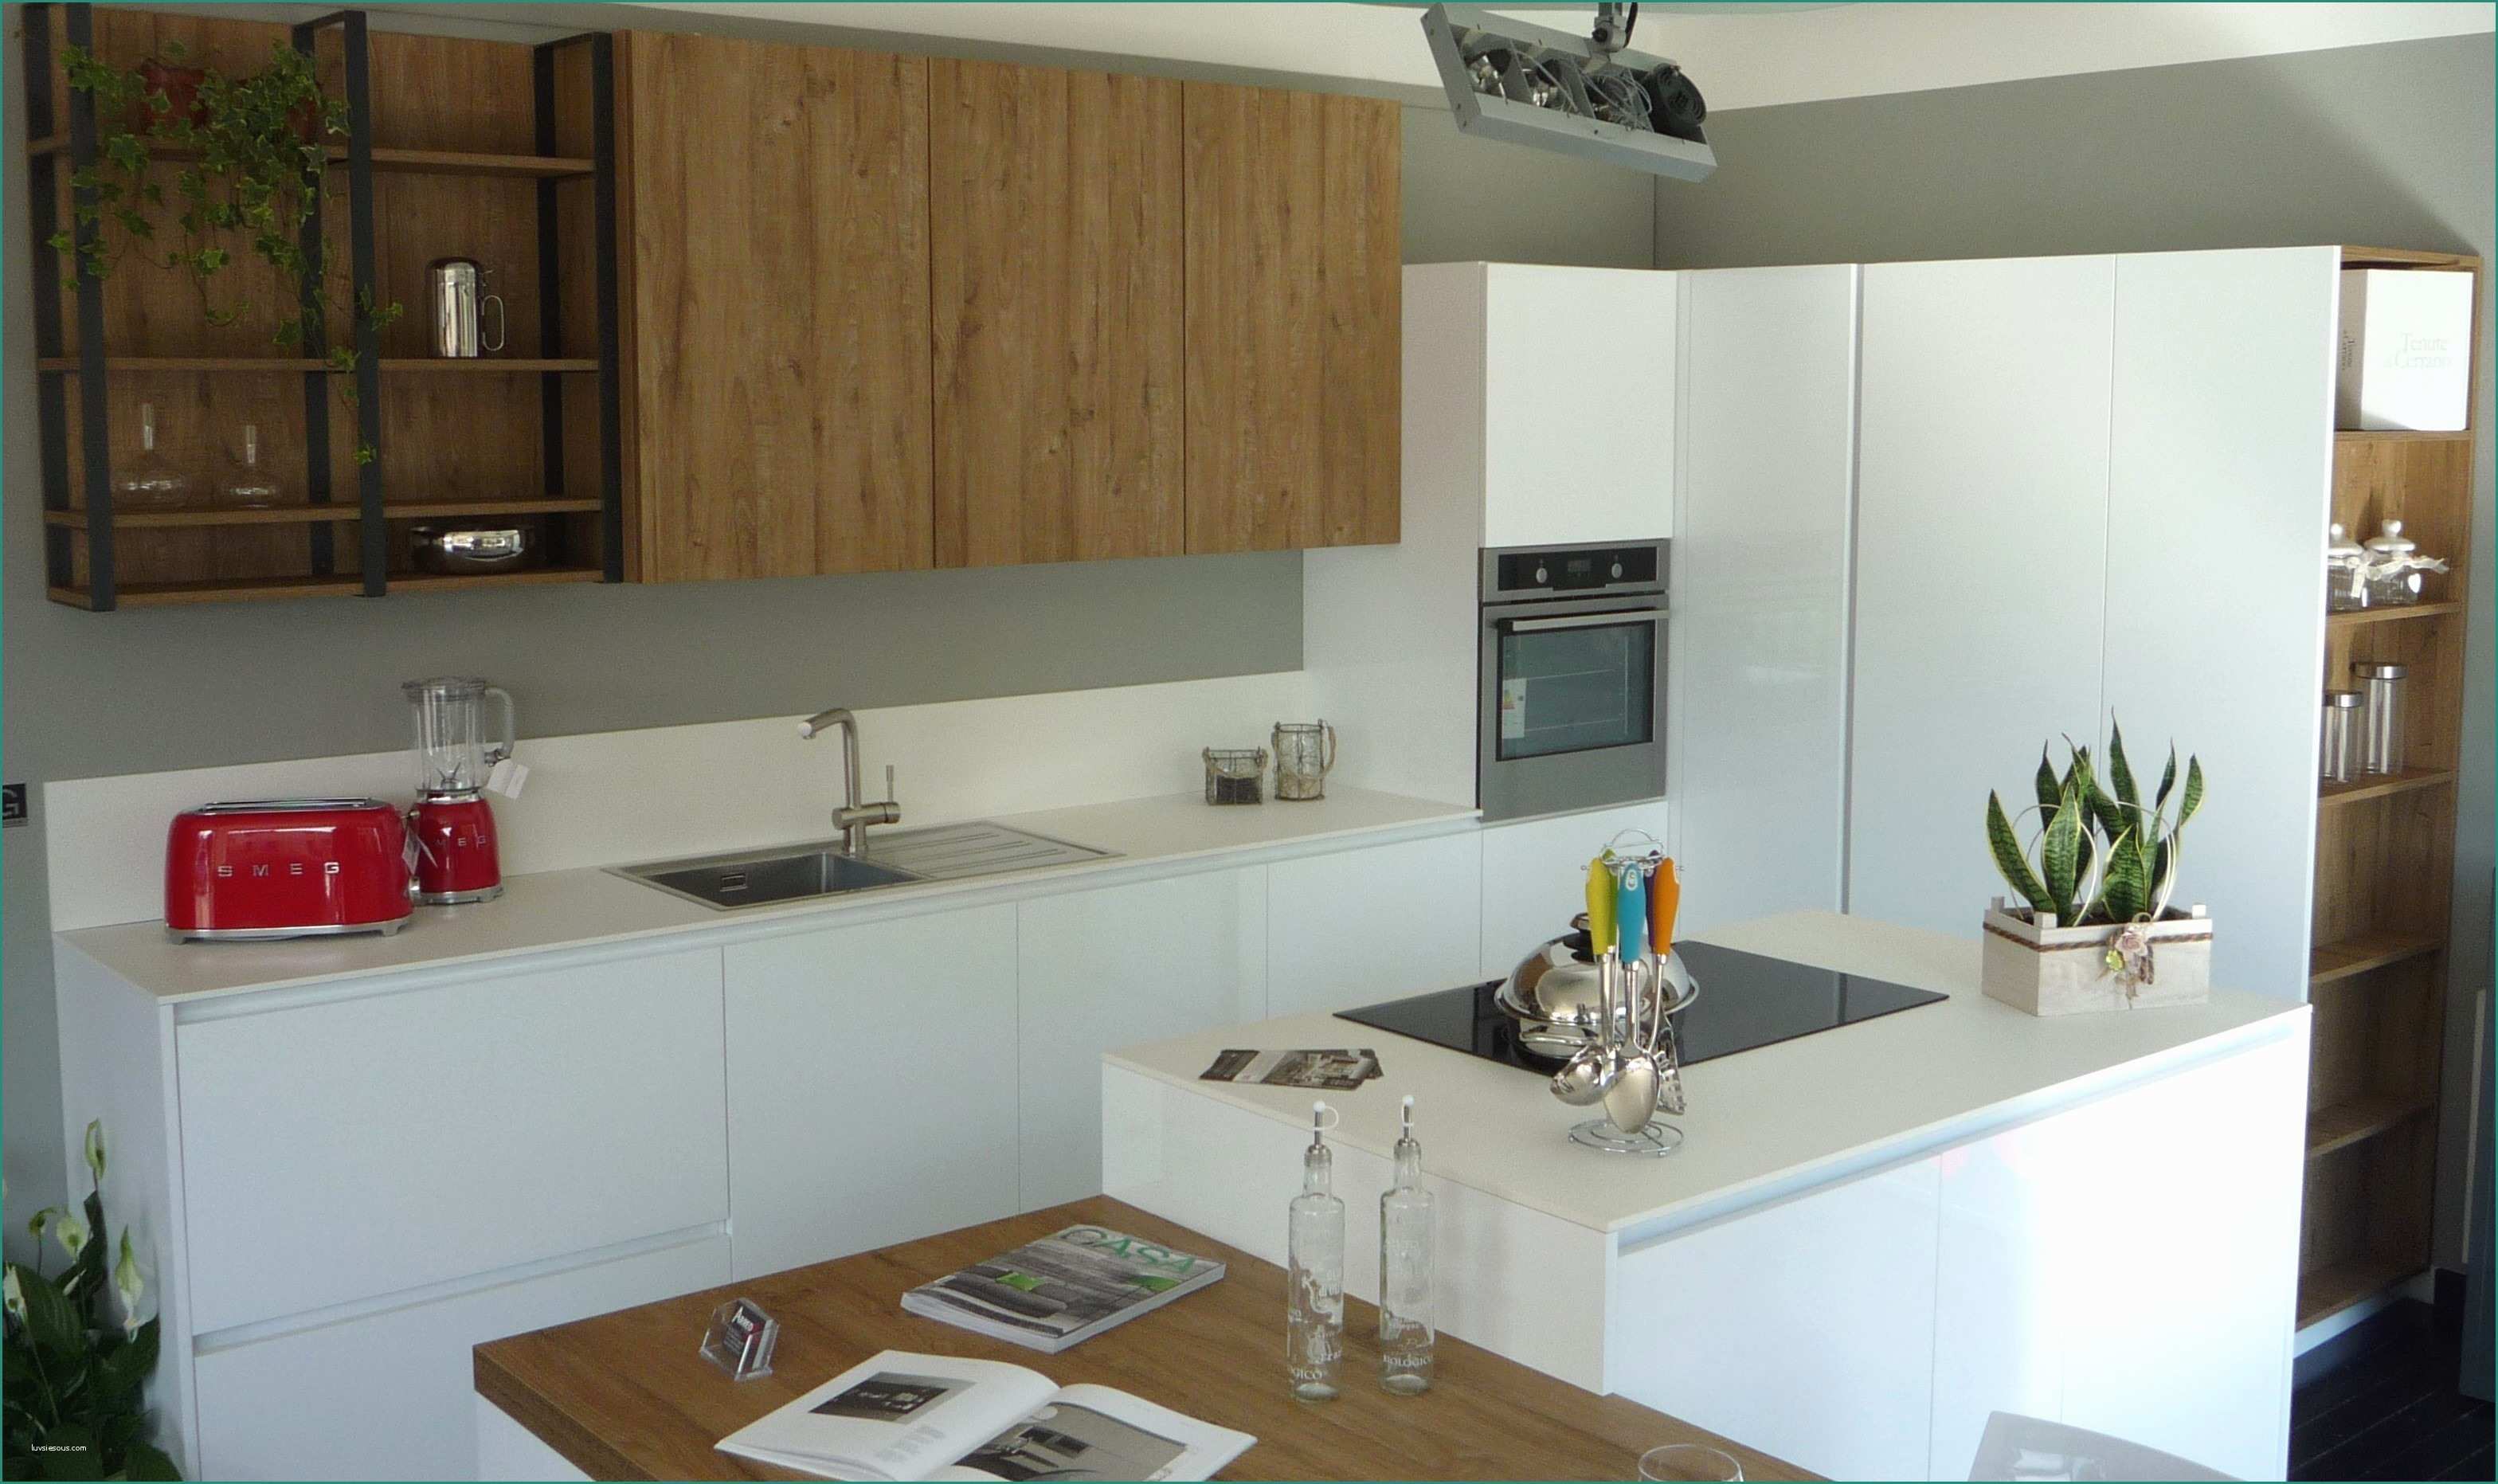 Cucine Rustiche Mondo Convenienza E isole Cucina Ikea Idee Di Design Decorativo Per Interni Domestici